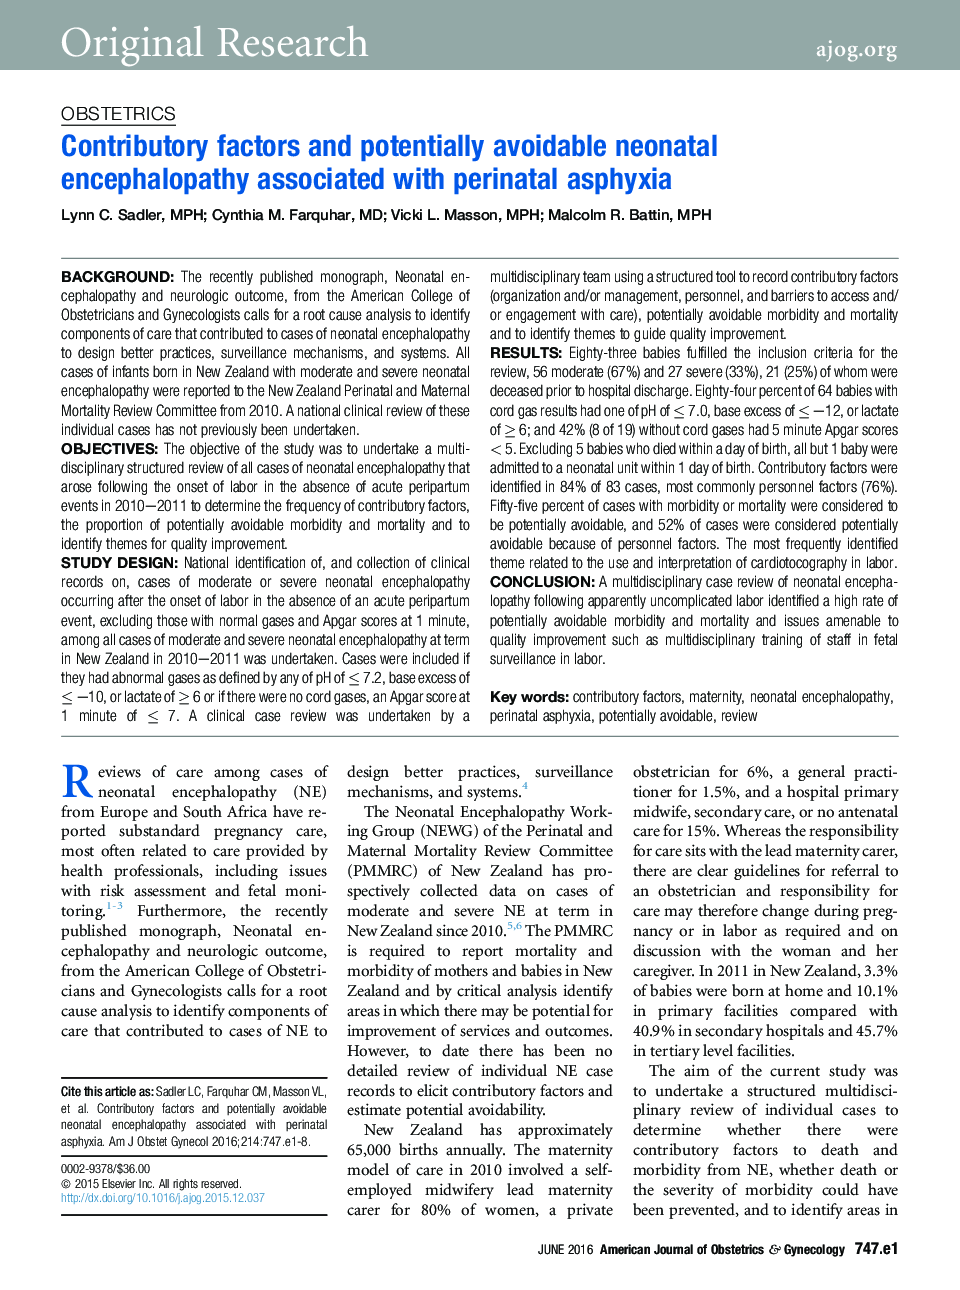 فاکتورهای مشارکتی و انسفالوپاتی نوزادان بالقوه قابل اجتناب و مرتبط با آسفیکسی پریناتال 